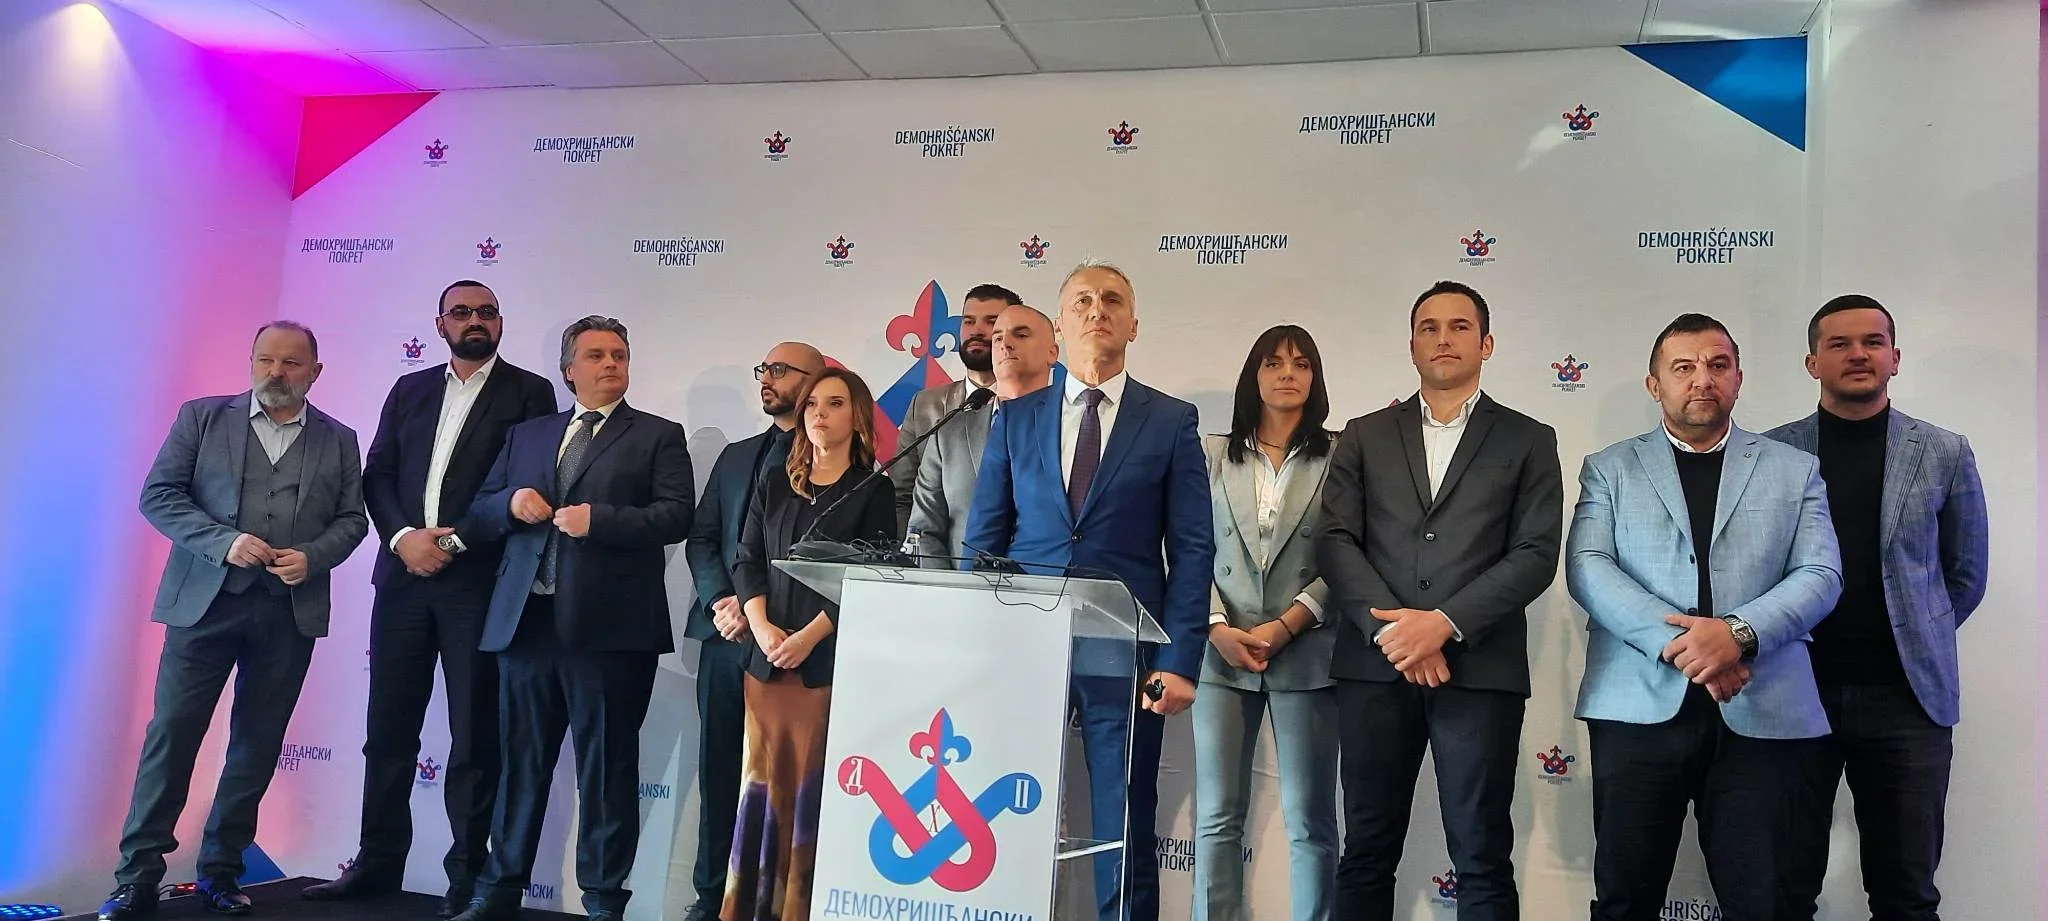 Vukšić: Krivokapić se povlači iz politike